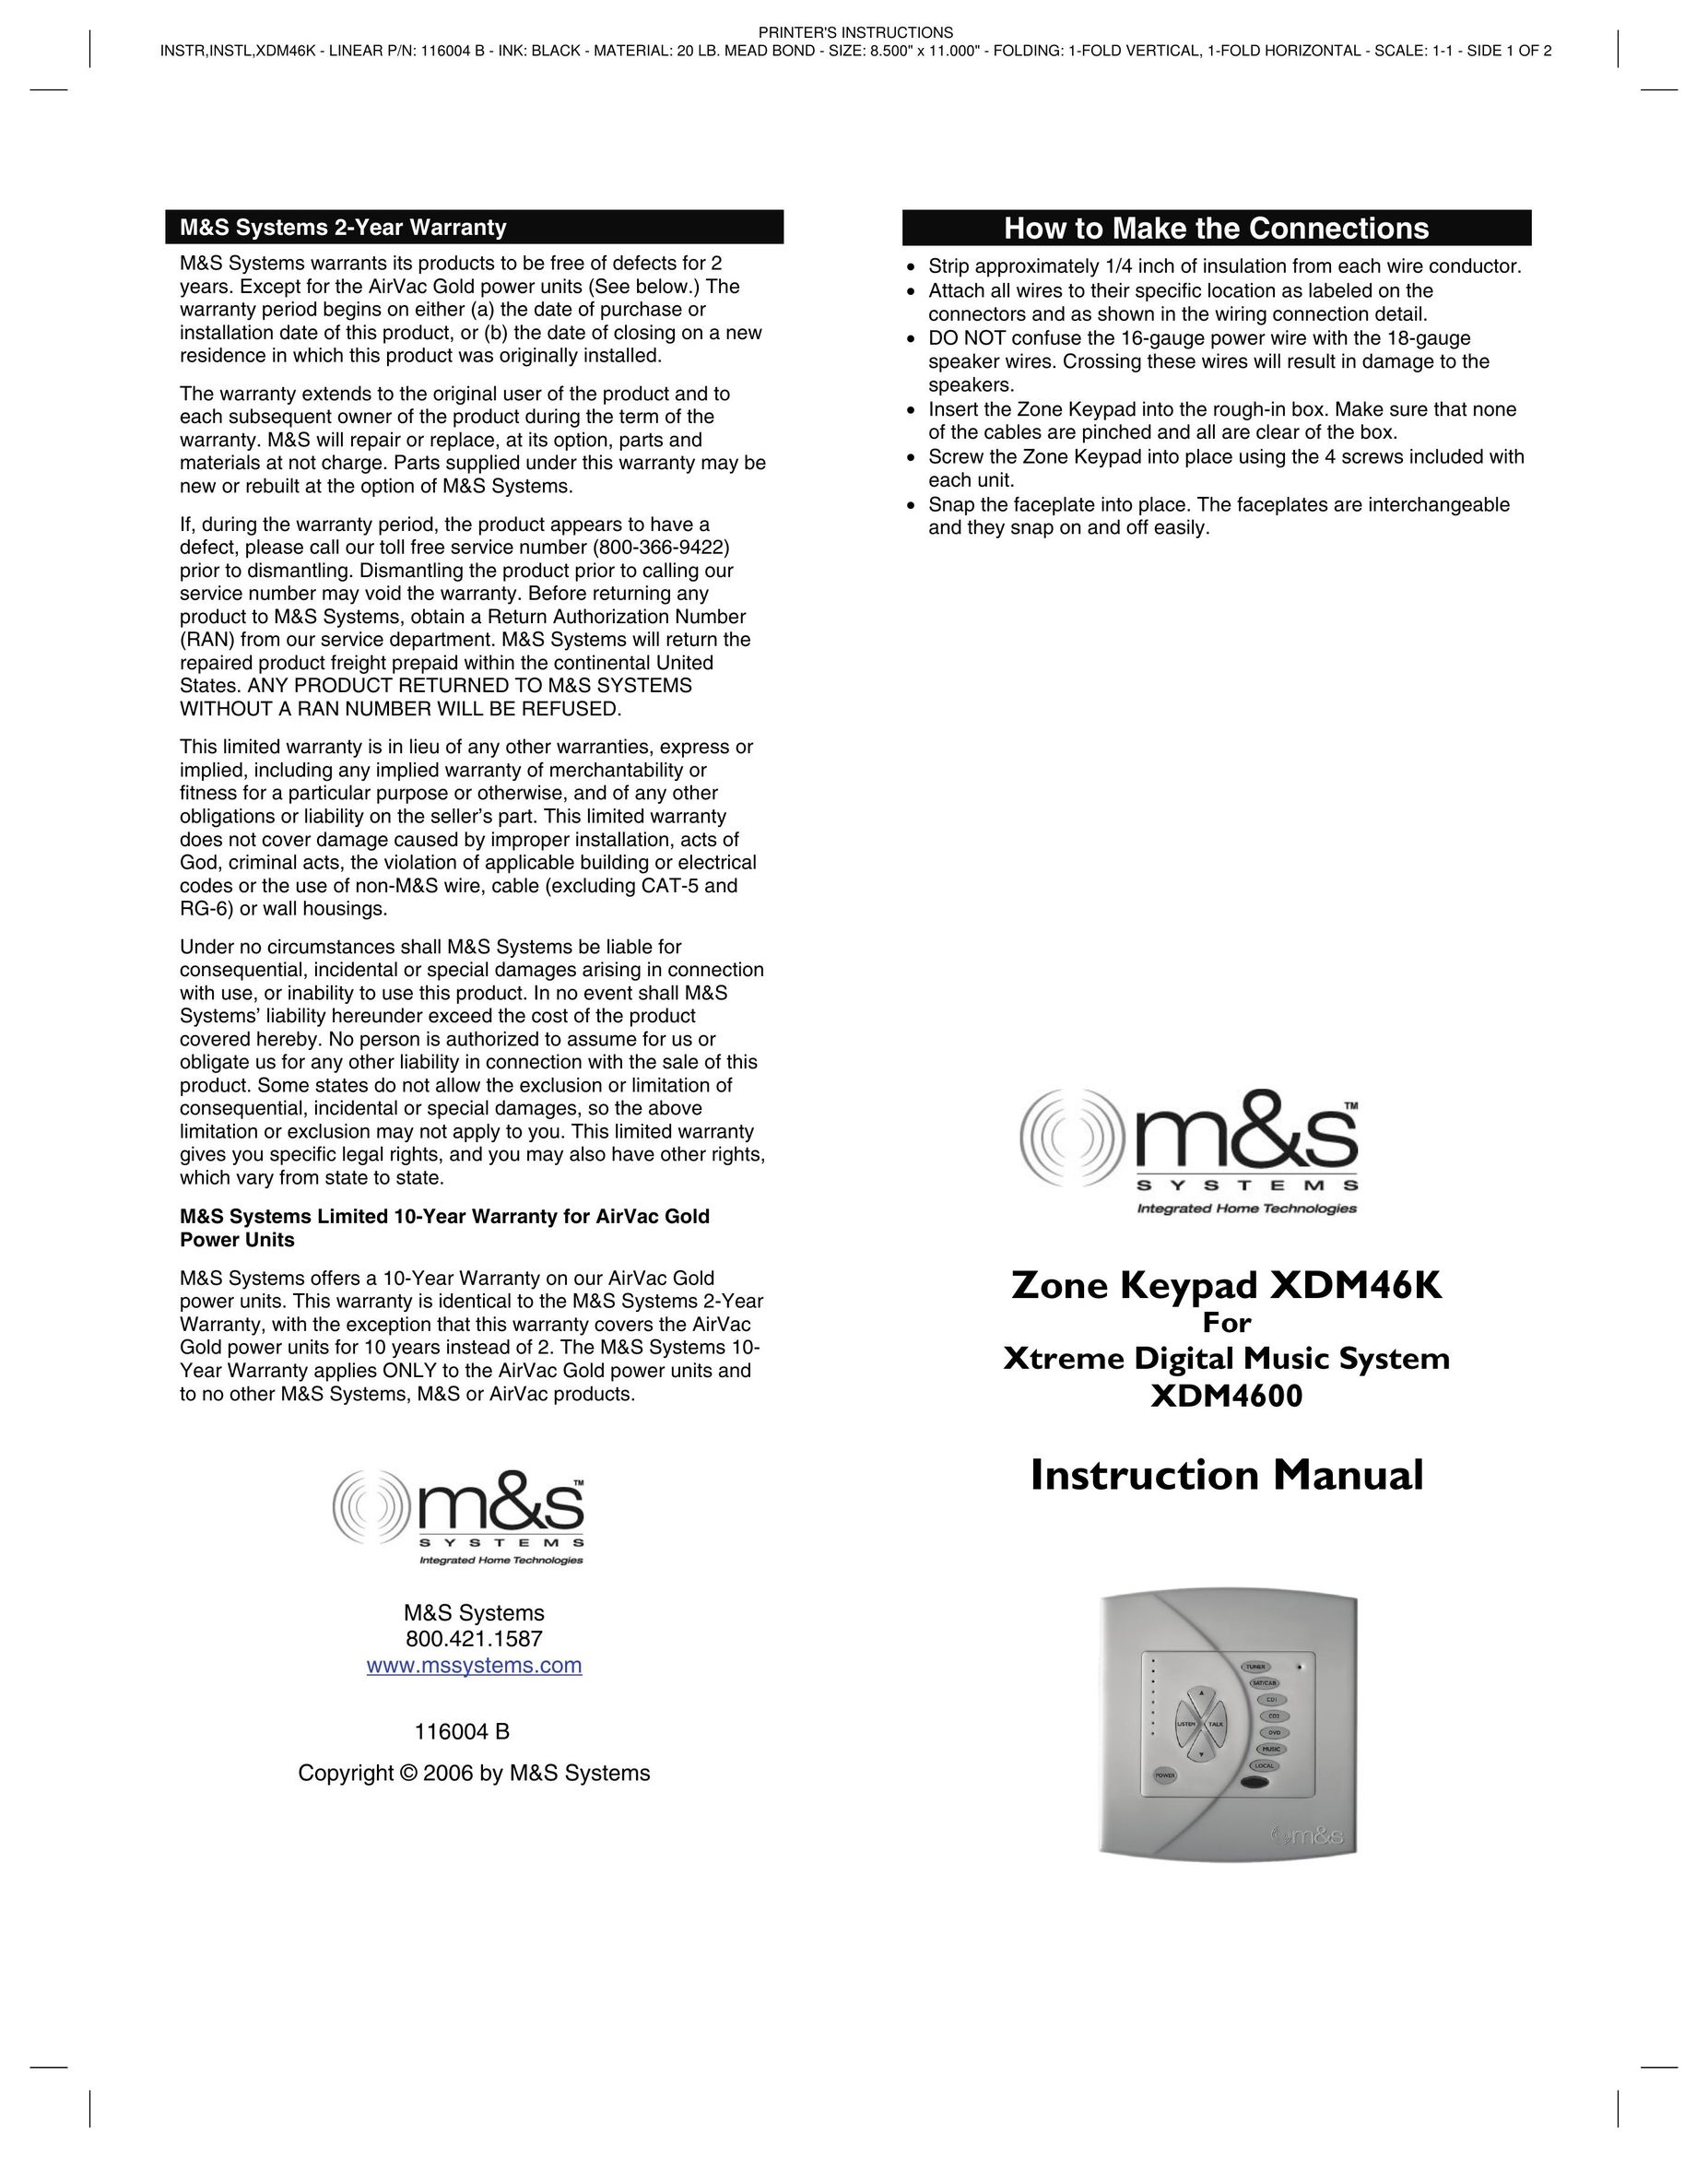 M&S Systems XDM46K Garage Door Opener User Manual